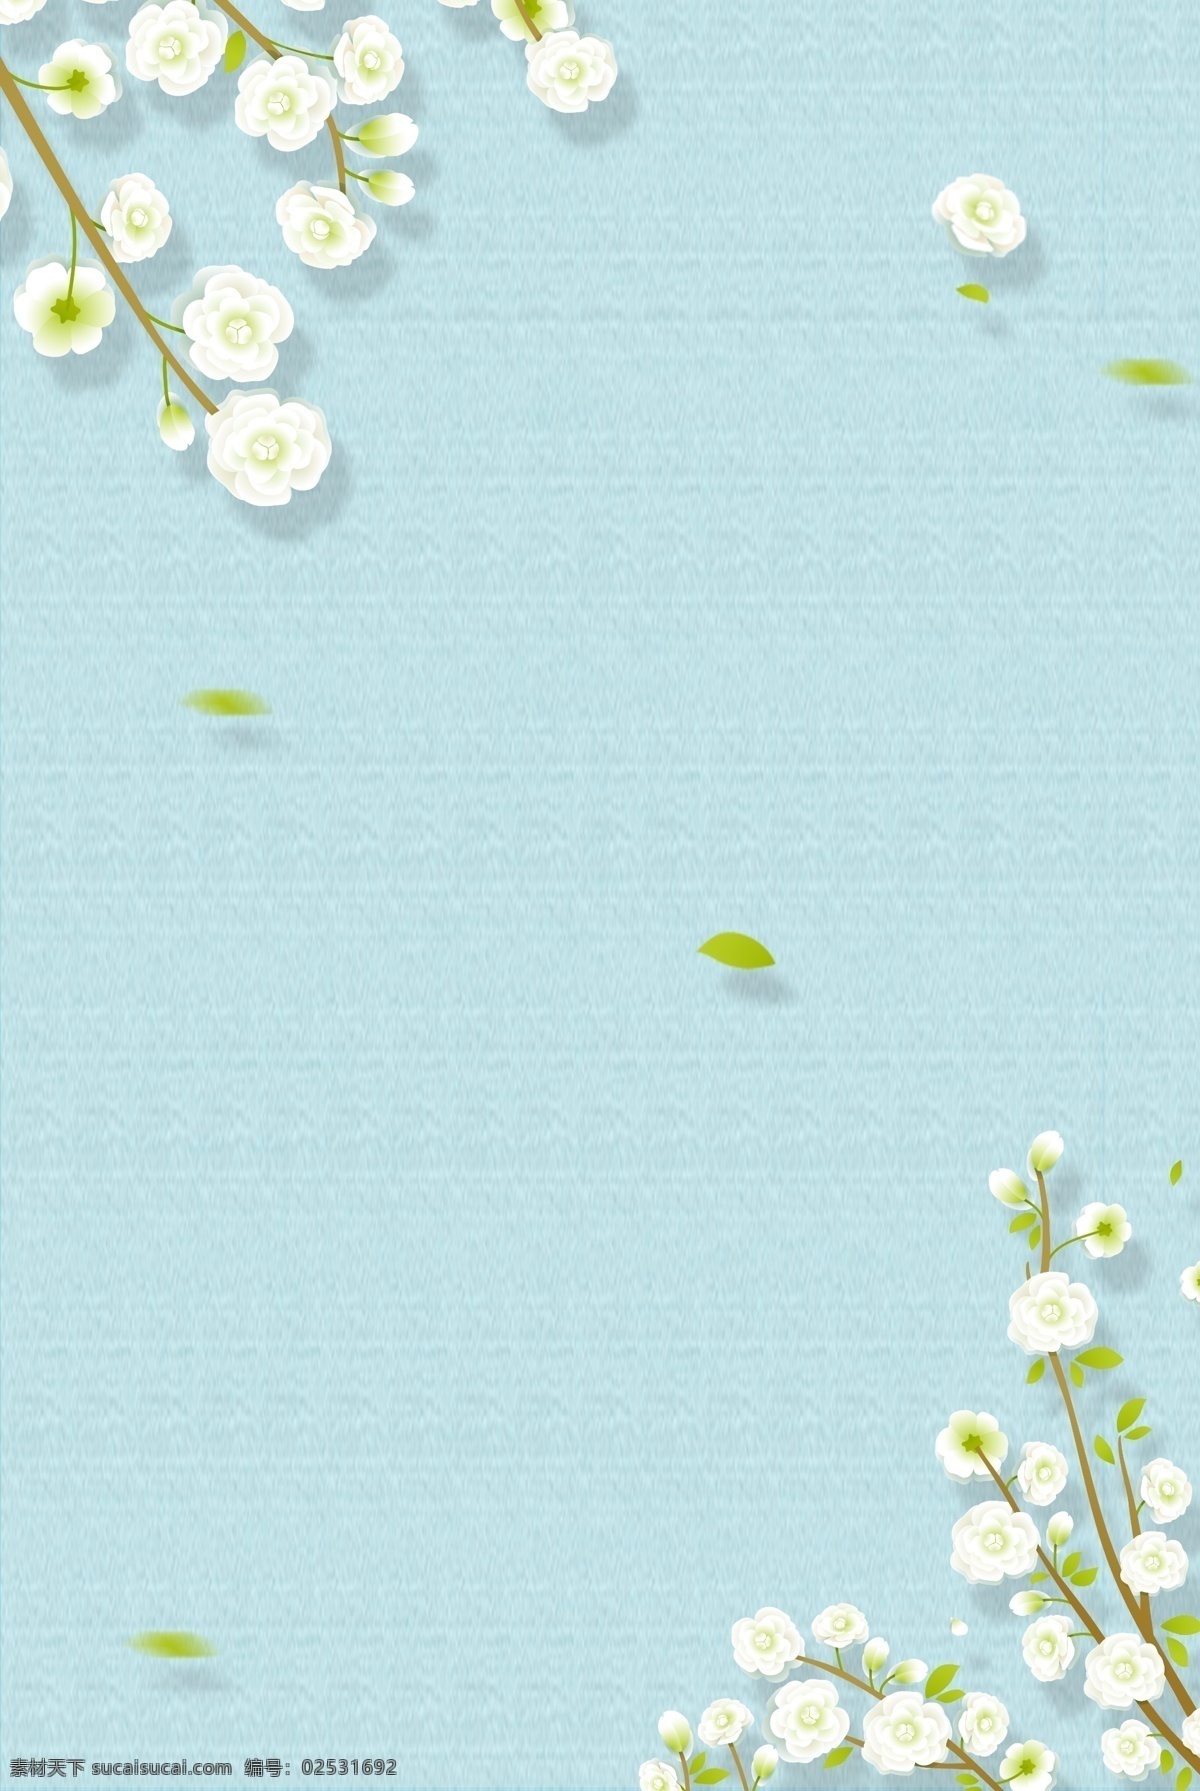 蓝色 质感 背景 清新 花朵 边框 海报 花朵边框 小清新 浪漫 简约 文艺 蓝色质感背景 清新花朵 绿叶